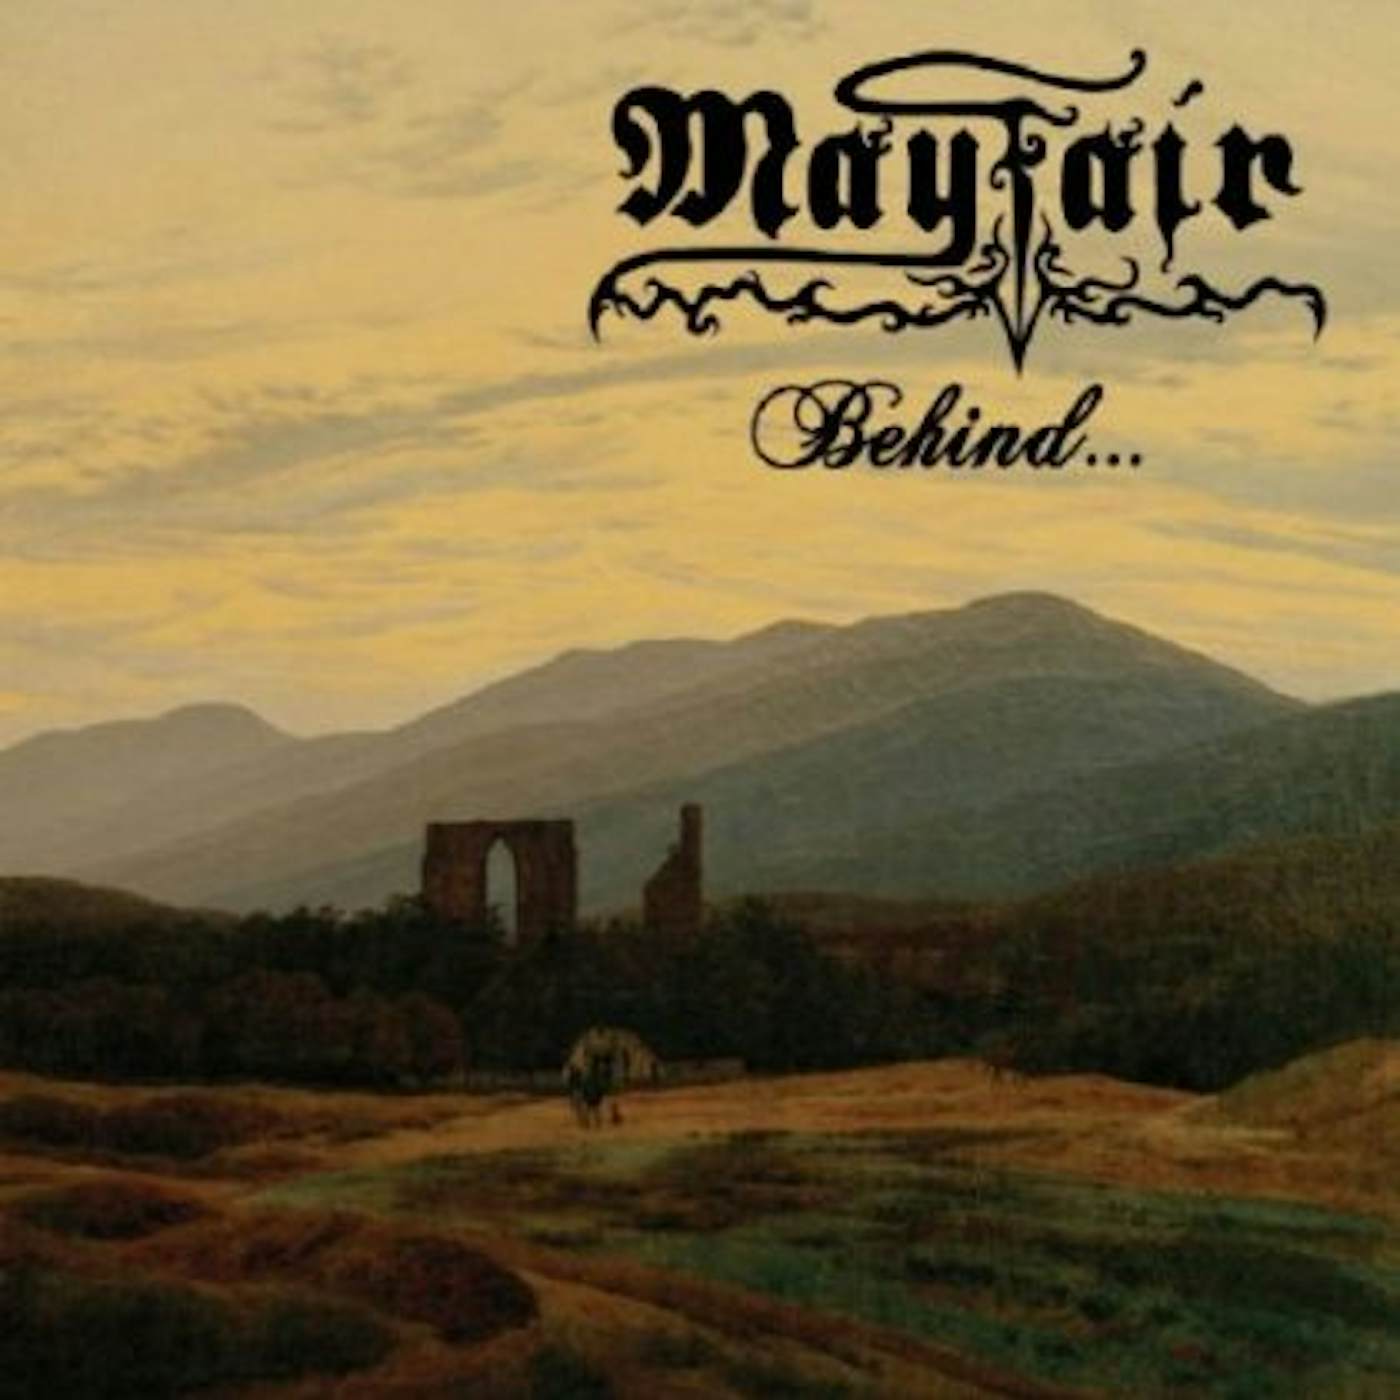 Mayfair BEHIND CD